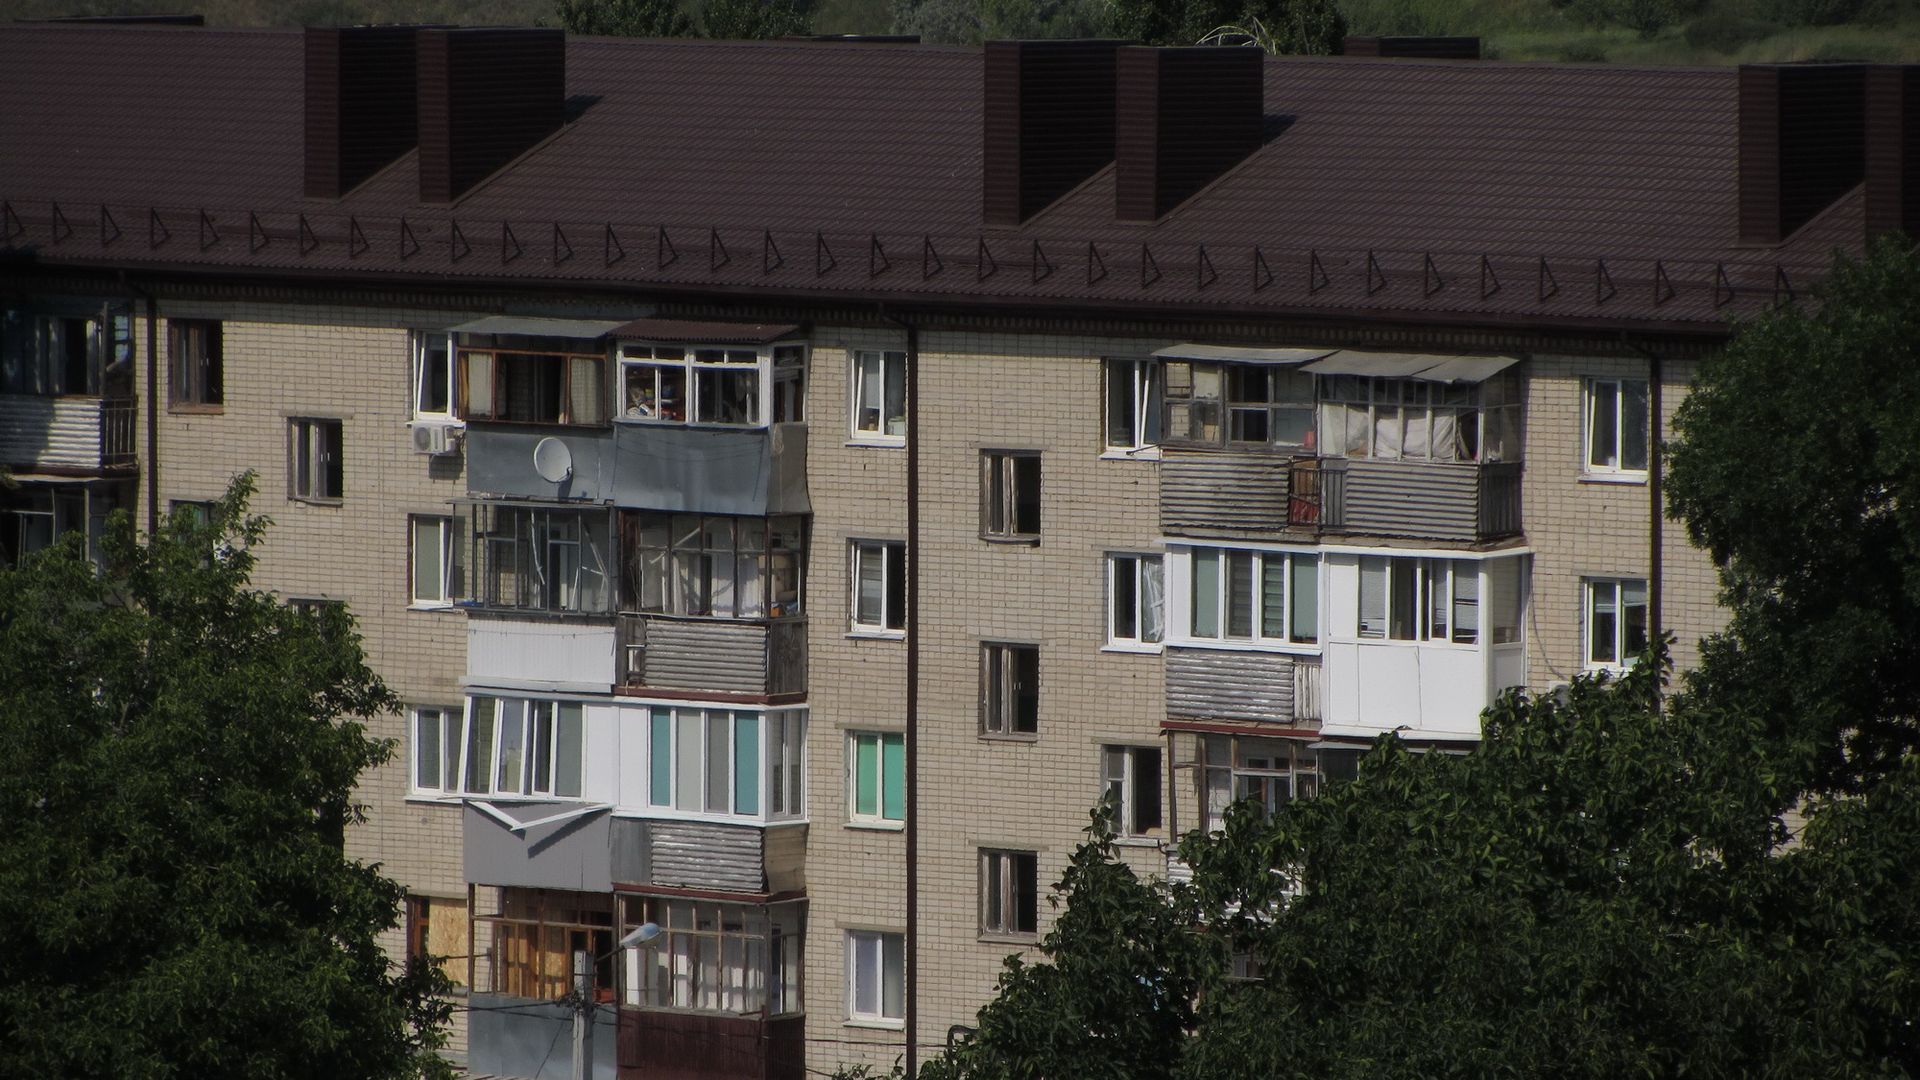 Повреждённая многоэтажка. Белгород, 03.07.2022 г.